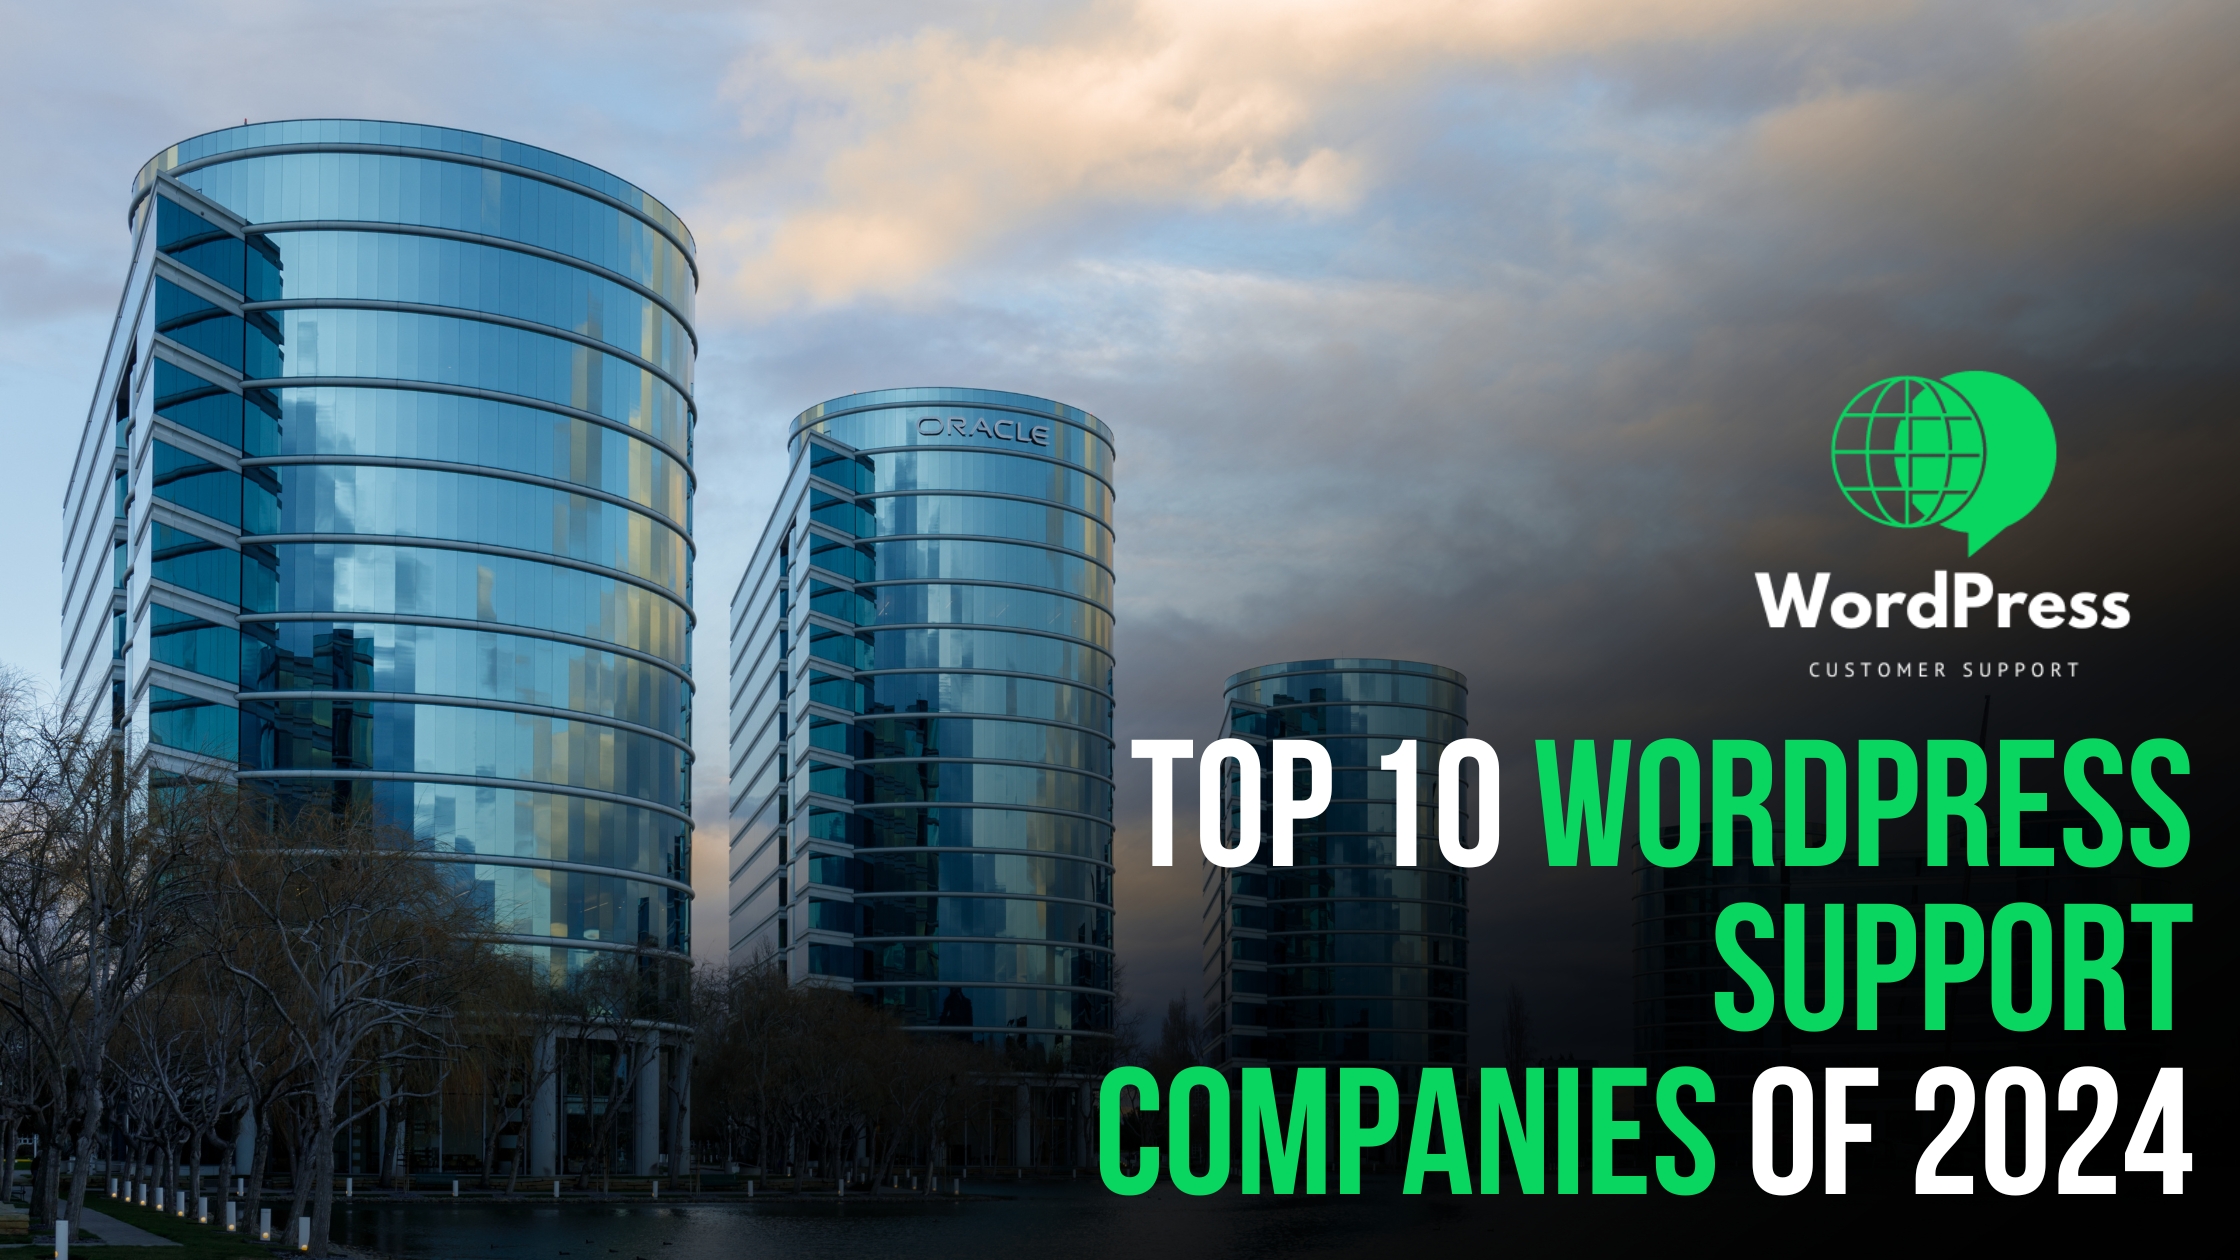 Top 10 WordPress Support Companies of 2024